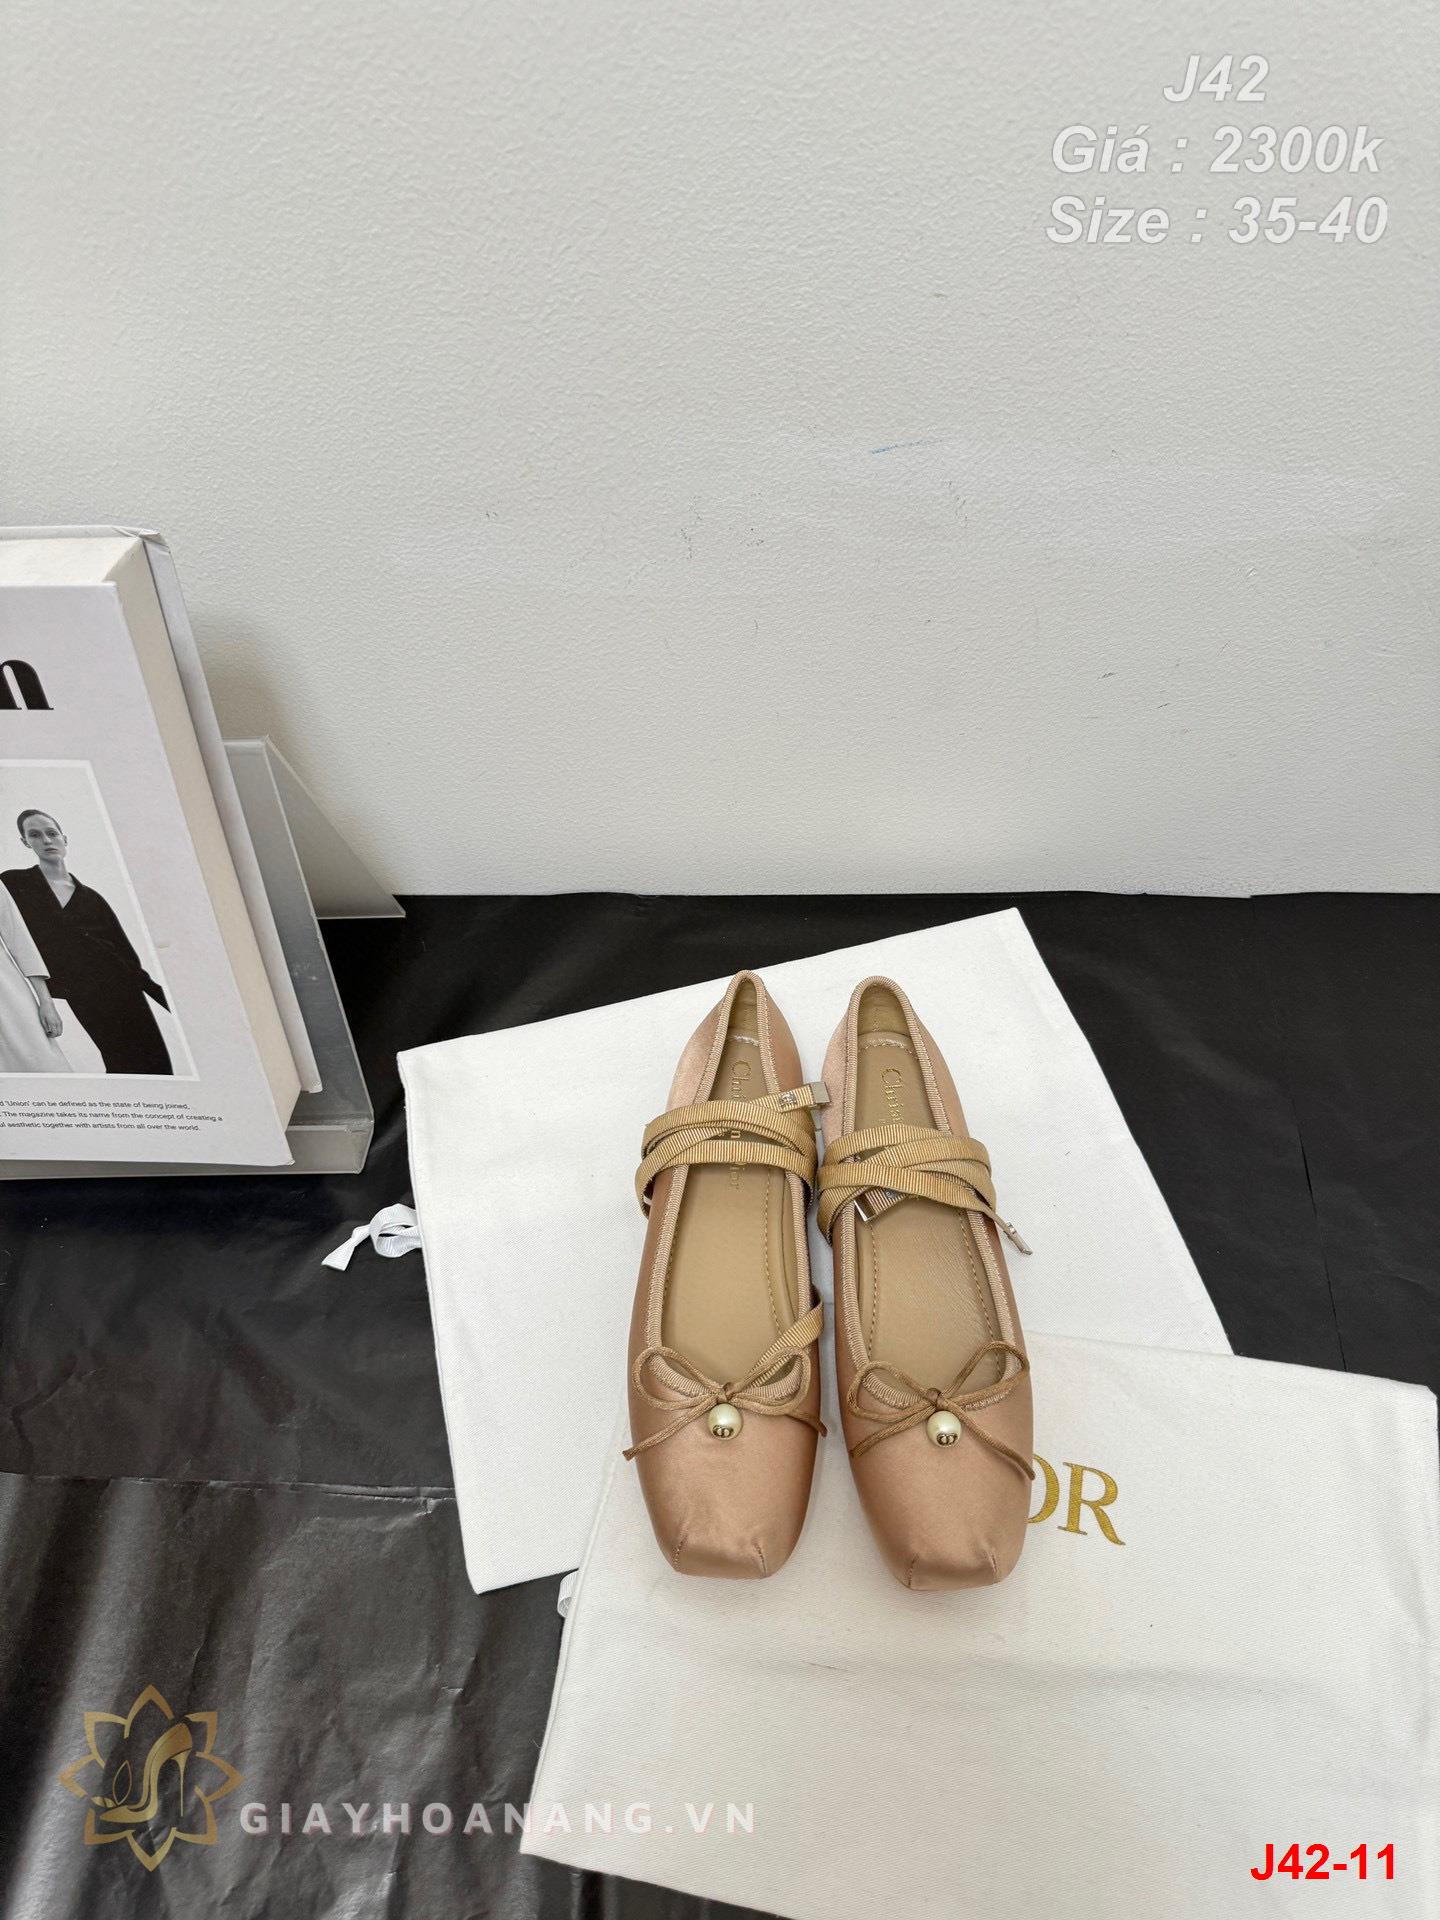 J42-11 Dior giày bệt siêu cấp